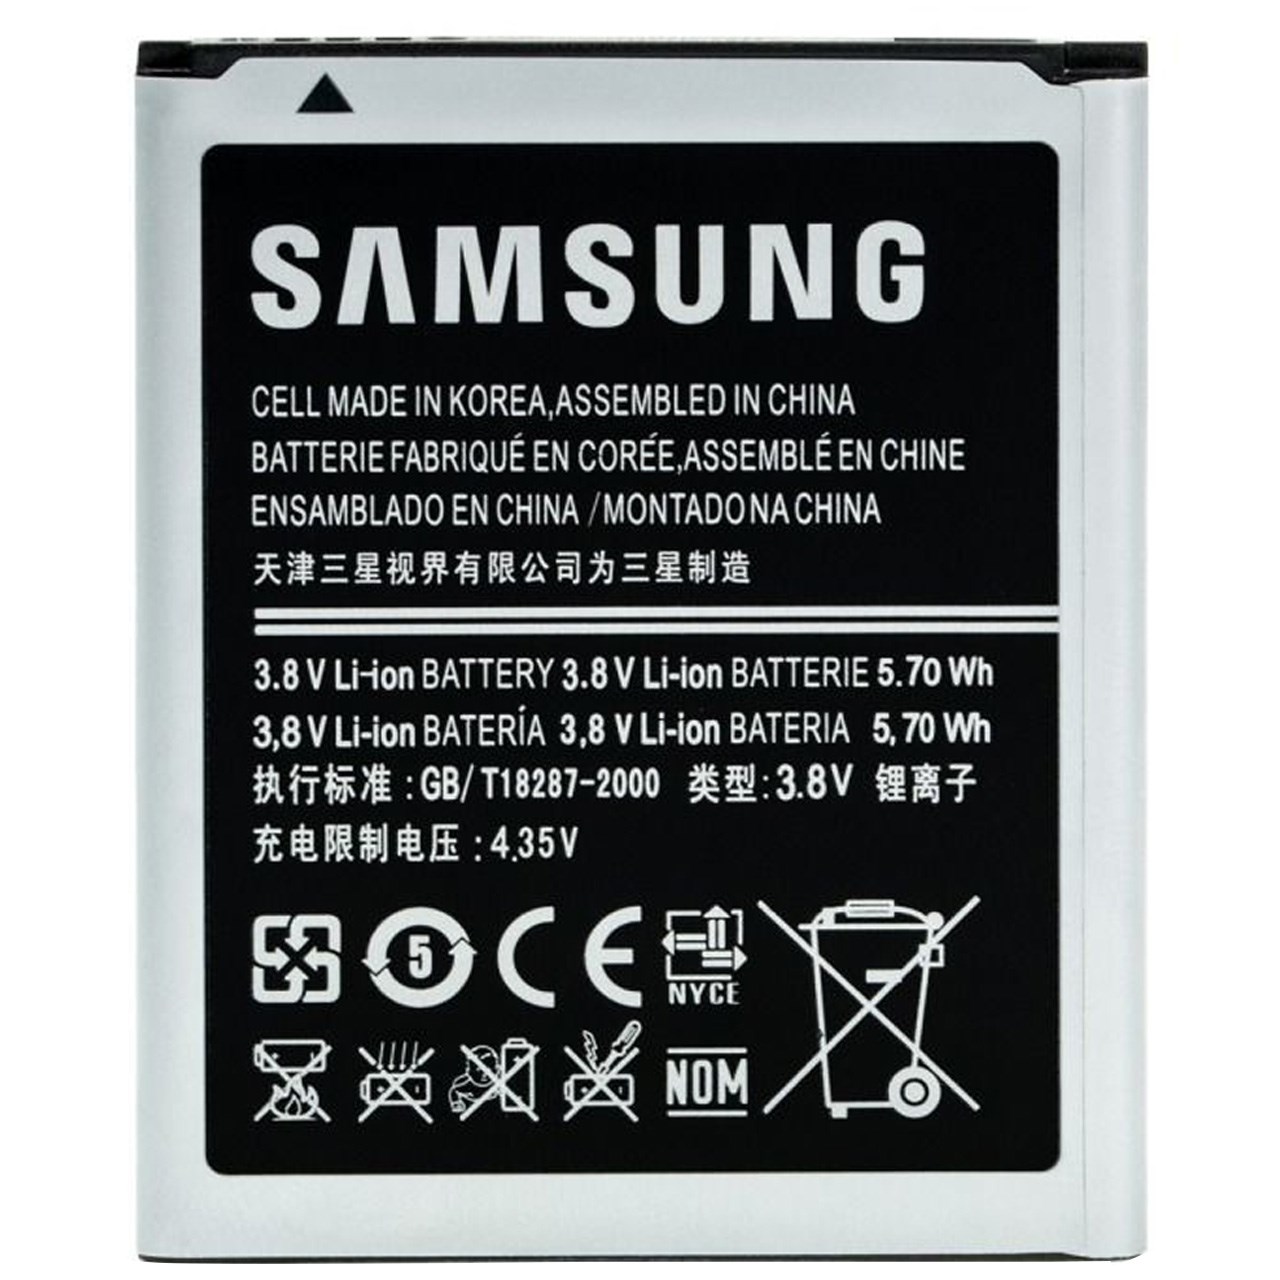 باتری موبایل  مدل GT-l8190 مناسب برای گوشی موبایل سامسونگ  Galaxy S3 Mini